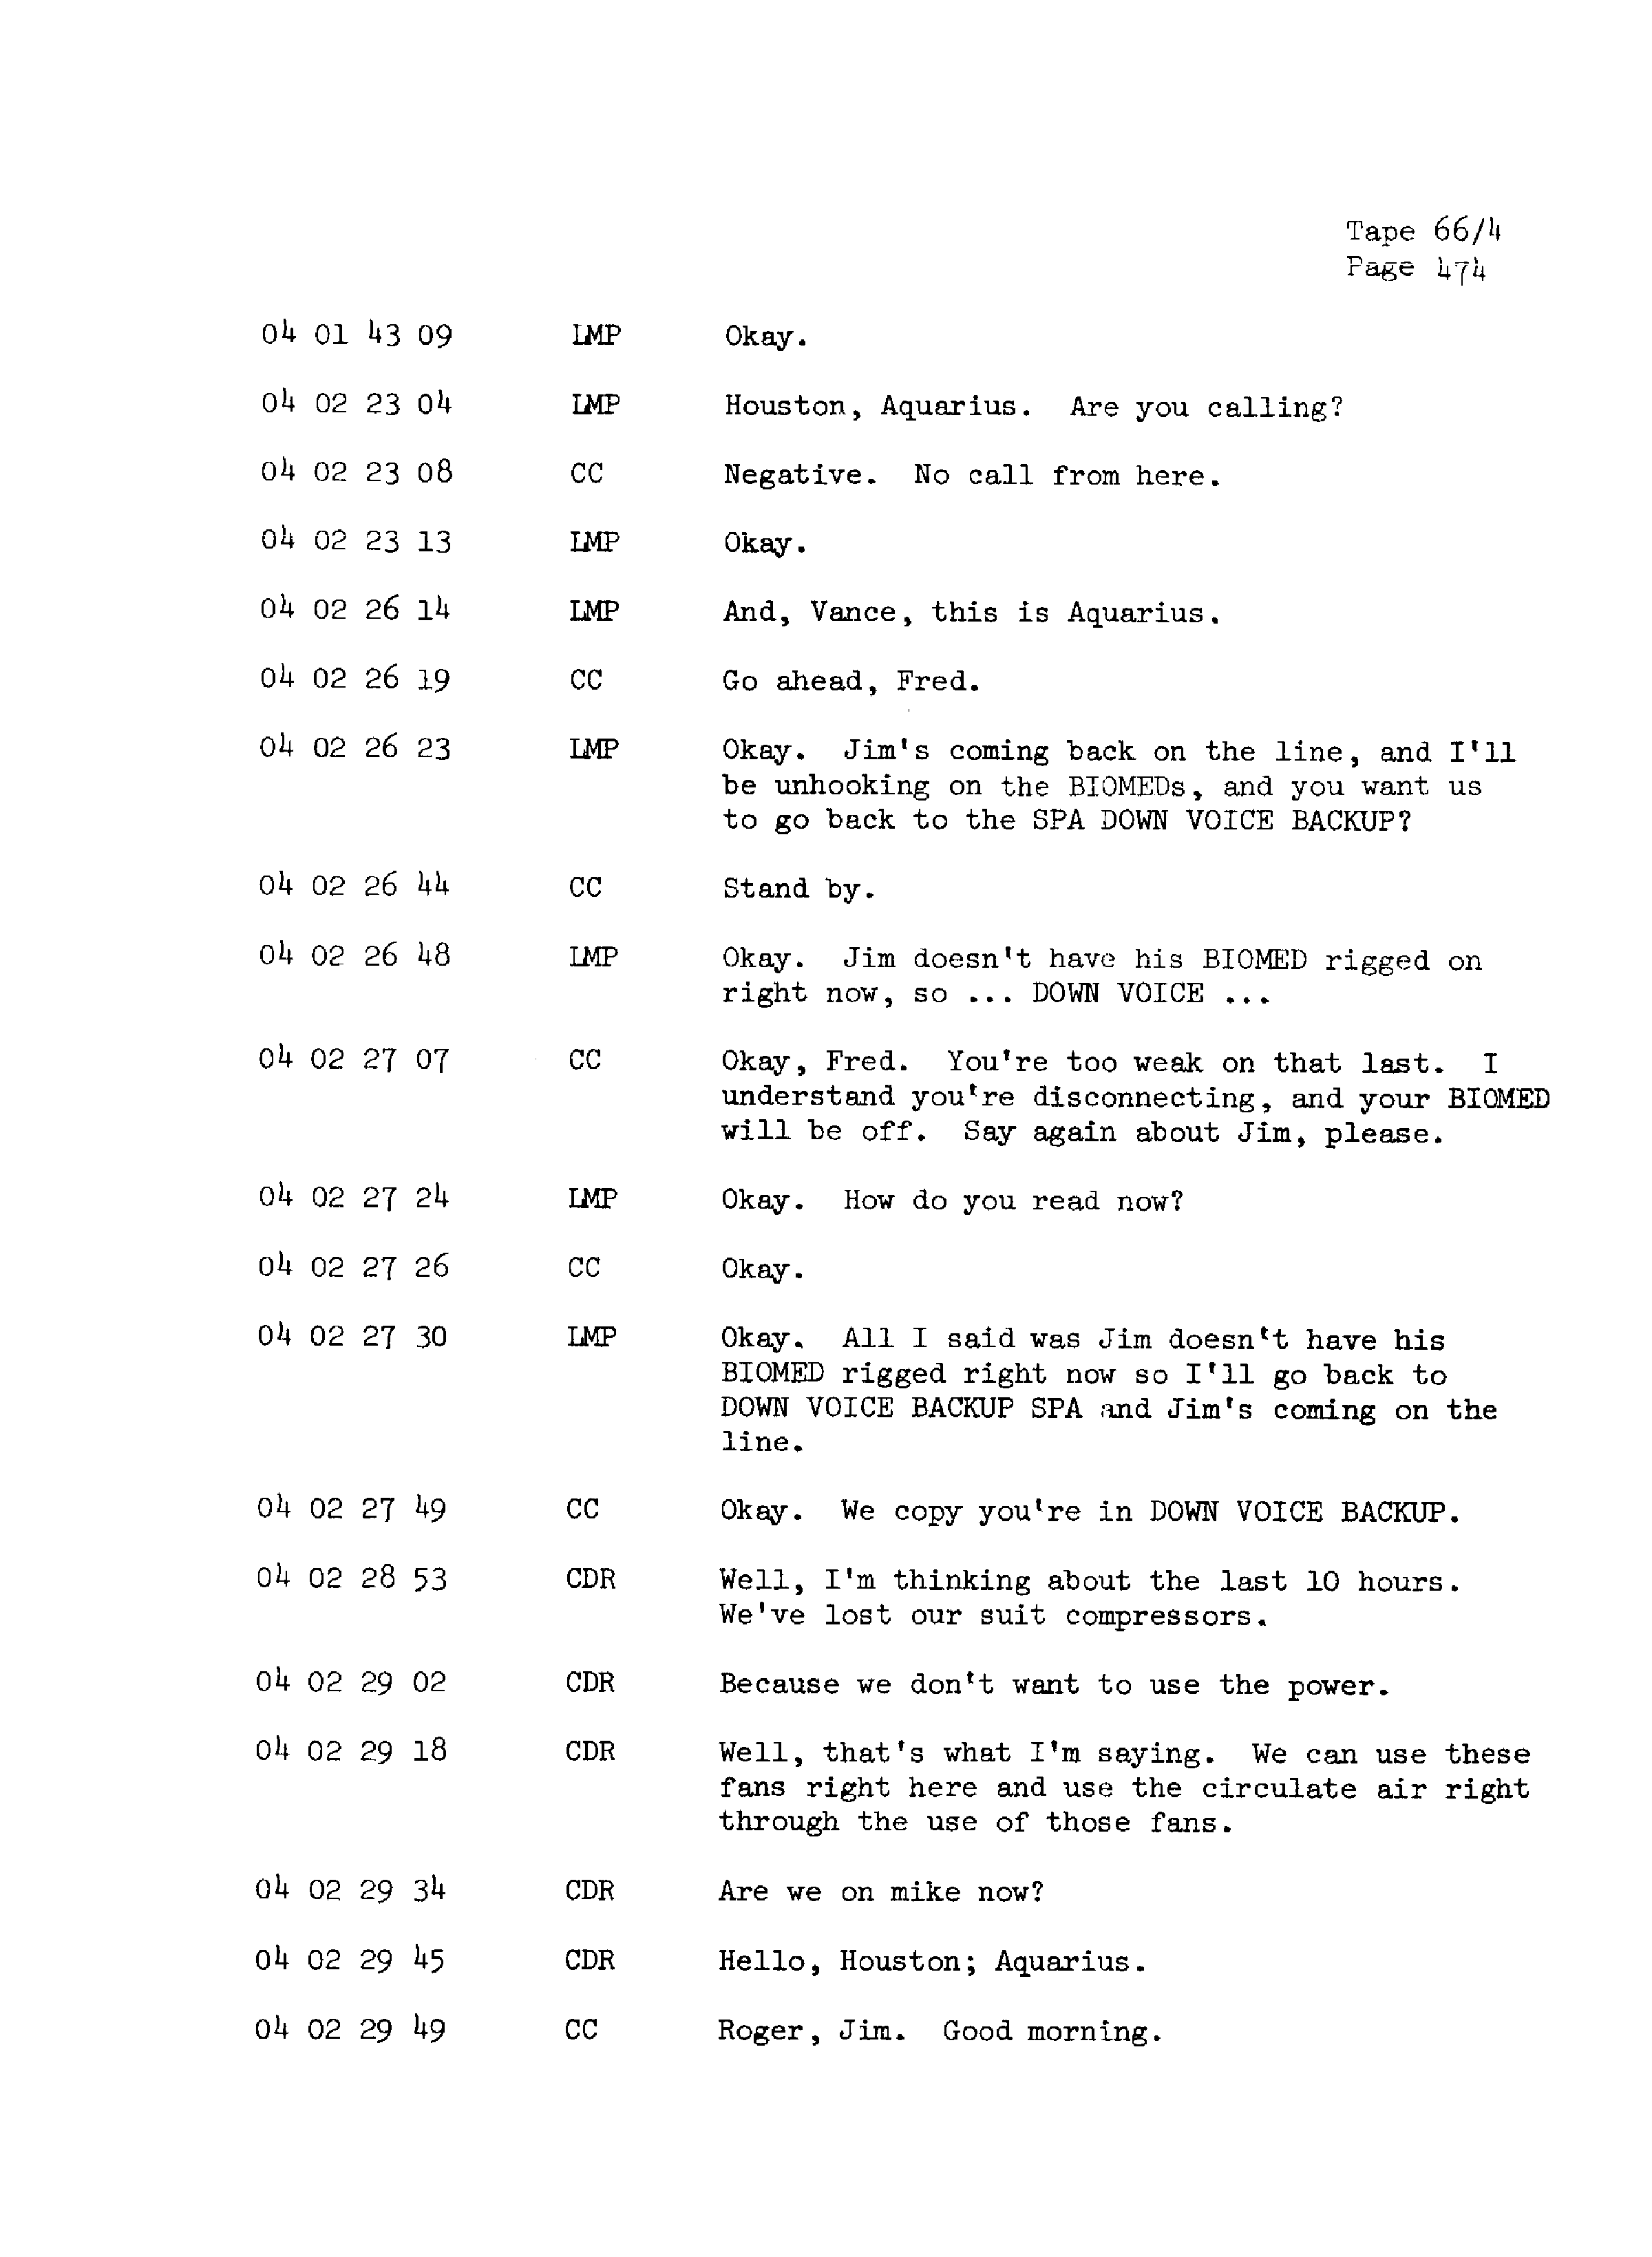 Page 481 of Apollo 13’s original transcript